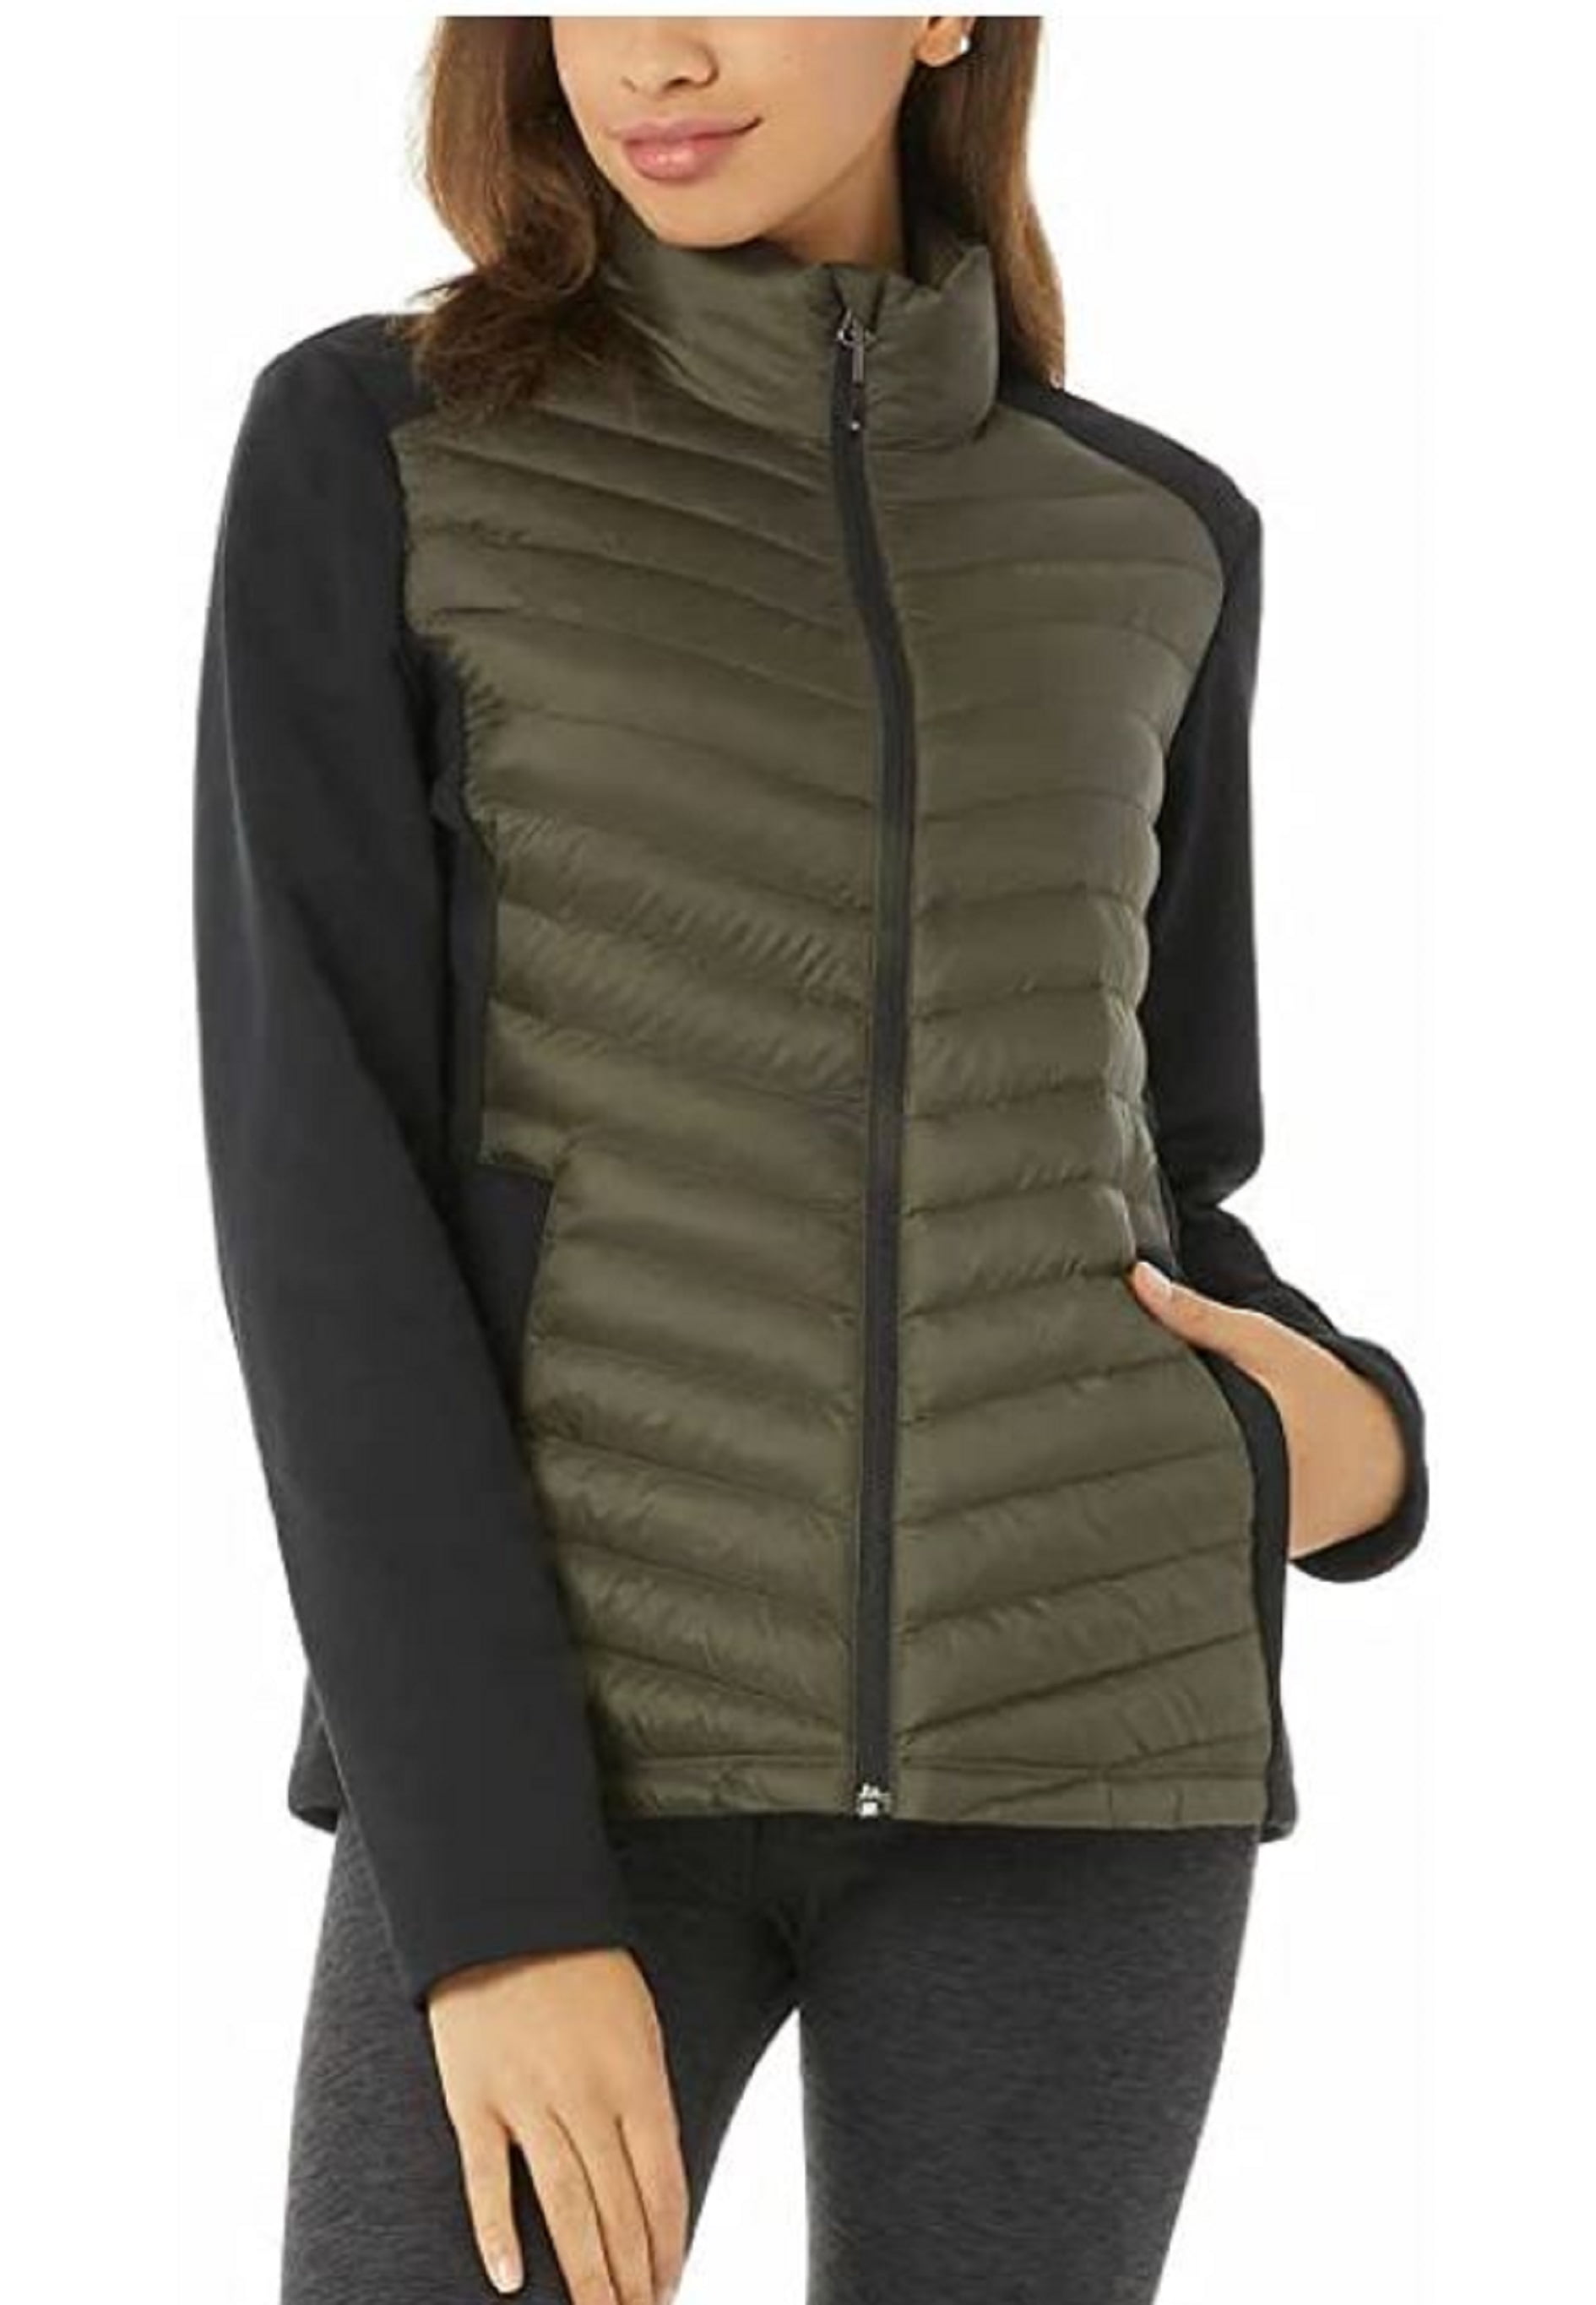 Spyder Women's Major Cable Stryke Fleece Sweater Jacket NWOT Dark Gray XL 